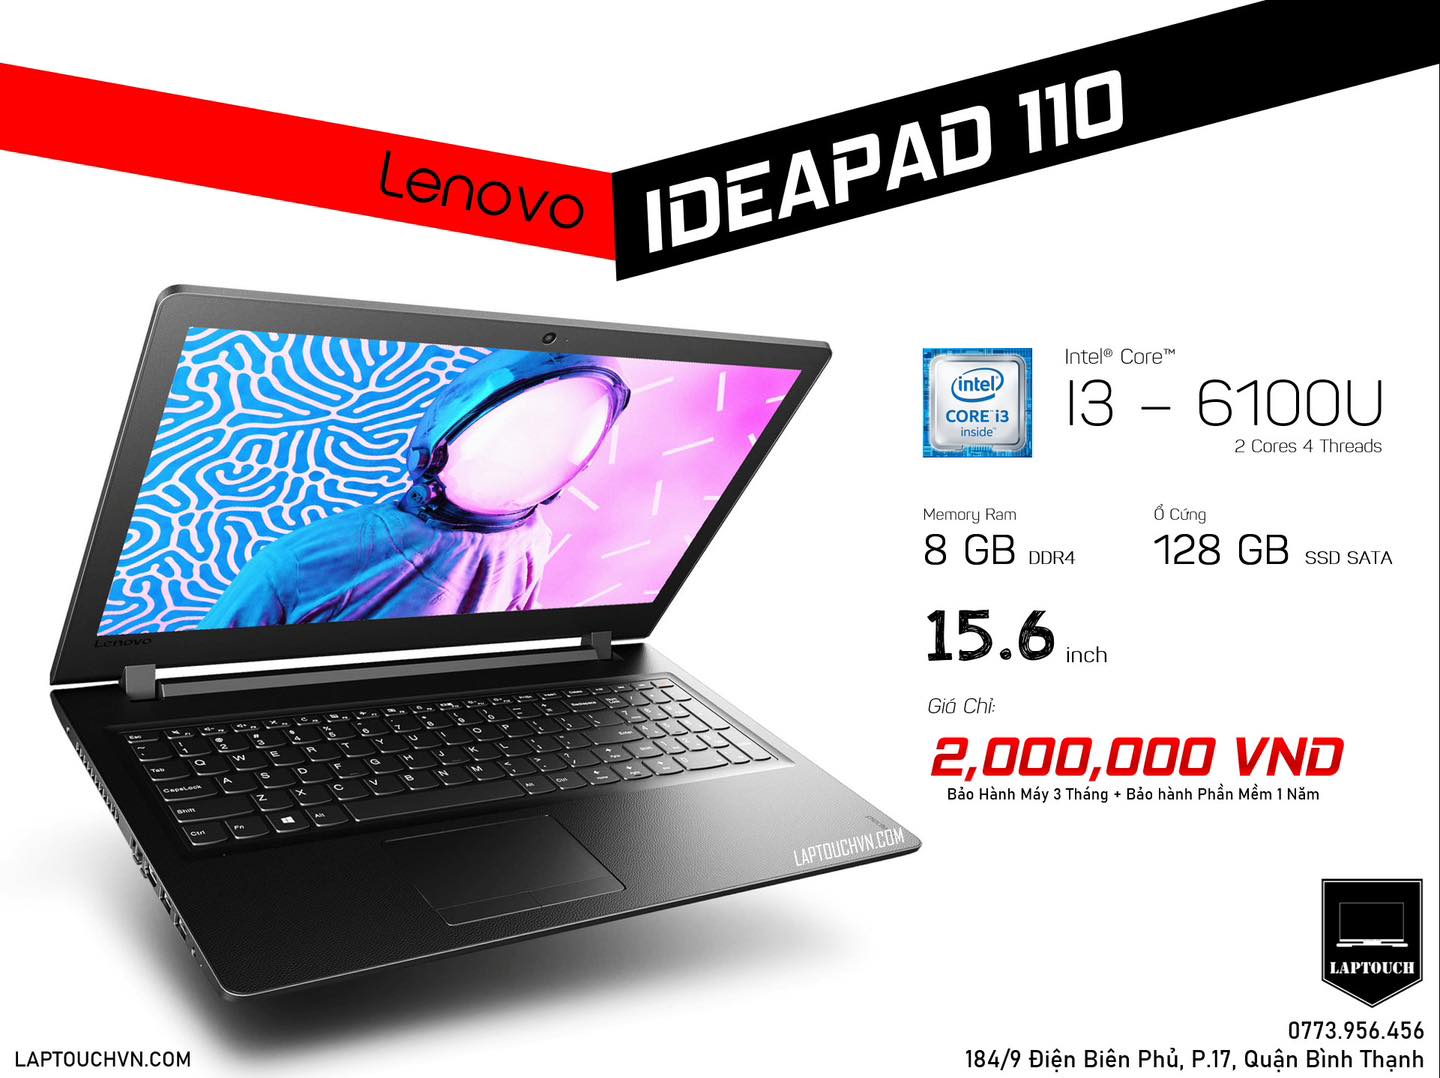 Lenovo Ideapad 110